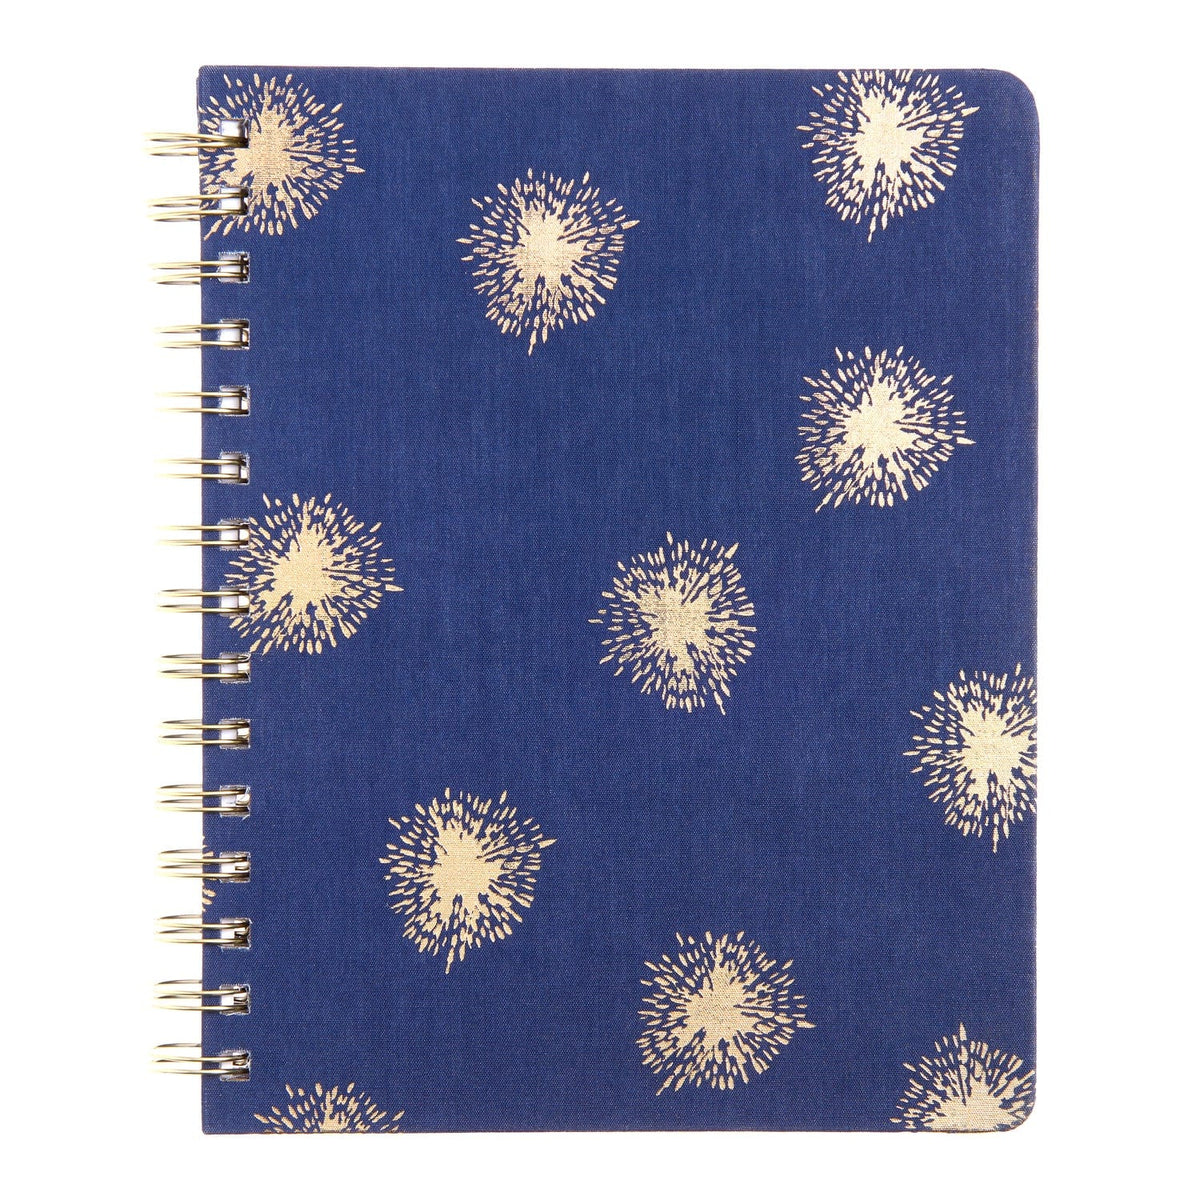 A5 Spiral Bookcloth Notebook - Navy Burst 68675 russell+hazel Notebook